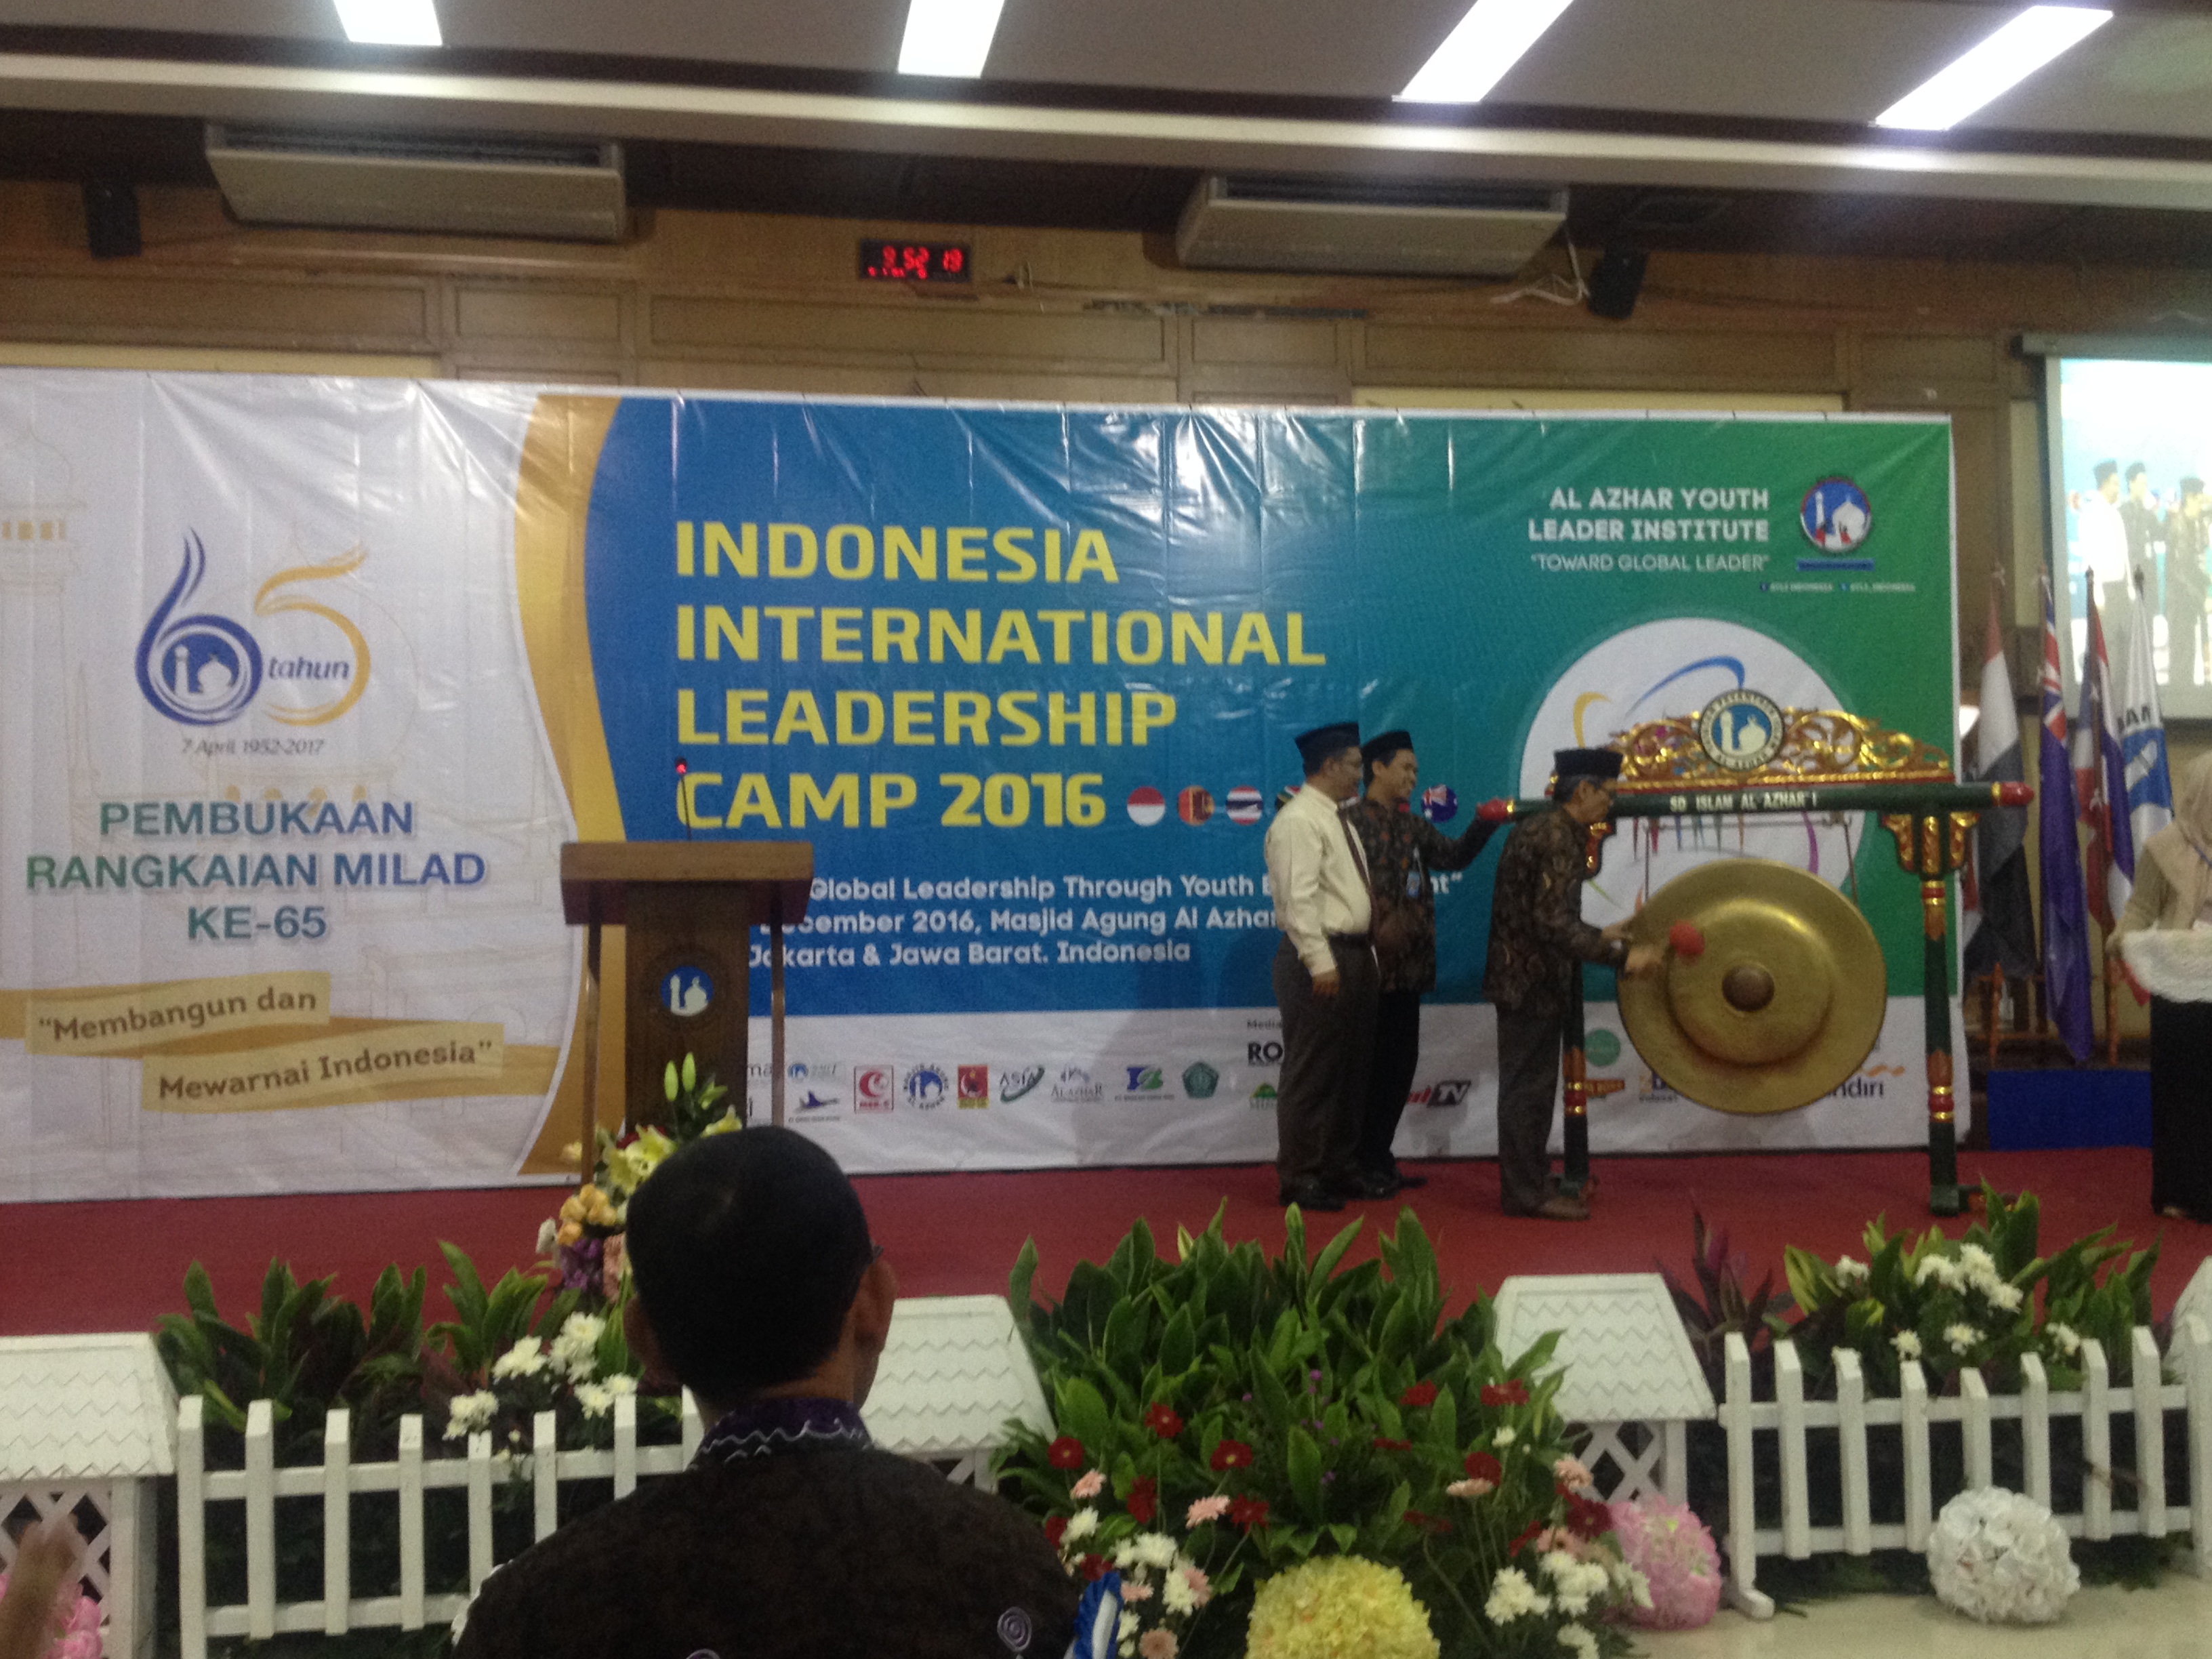 Indonesia International Leadership Camp 2016 Dimulai